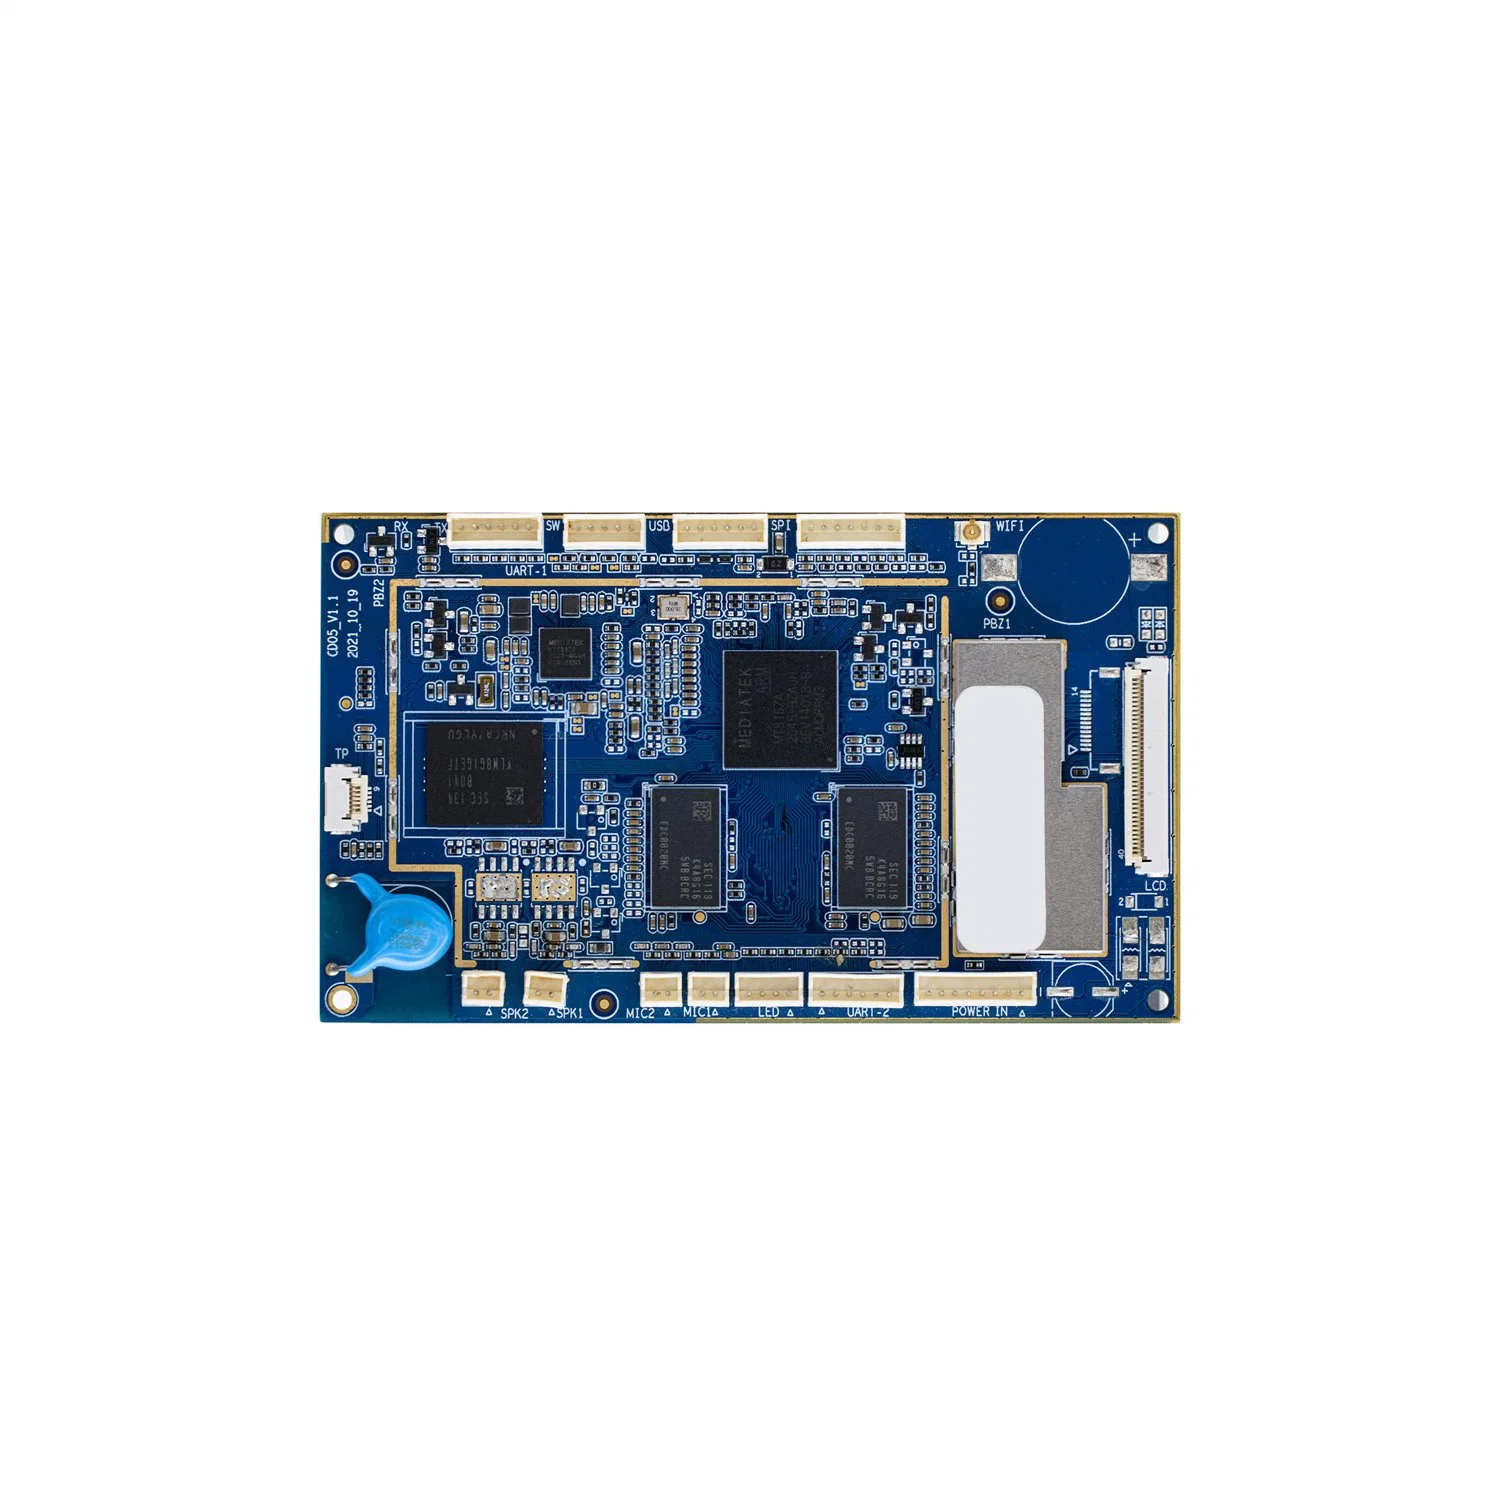 Placa madre PCBA multicapa para electrodomésticos Embedded Rk3126c de Rock Chip con 1GB-256MB RAM y 4GB/8GB/16GB/32GB ROM compatible con Linux WiFi Bluetooth